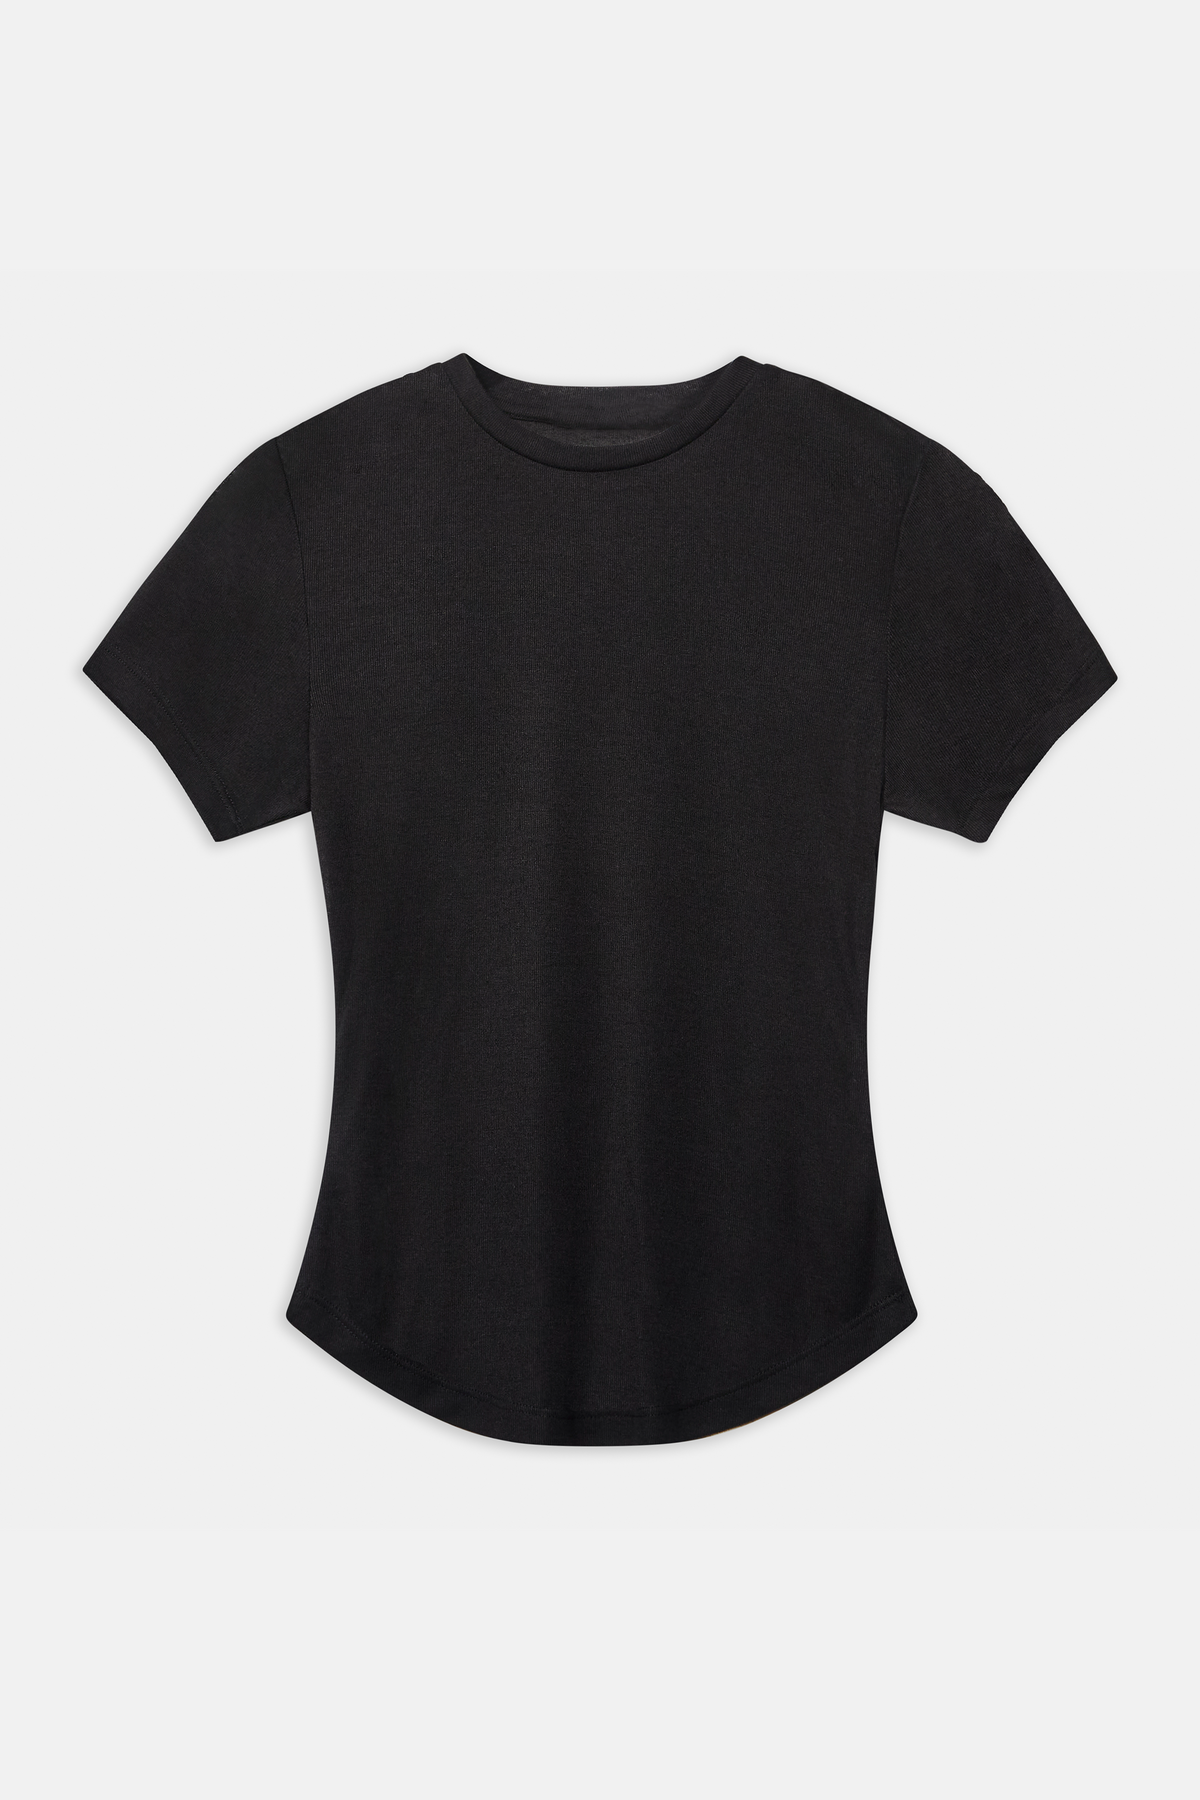 Semi Sheer 90's T Shirt - Black